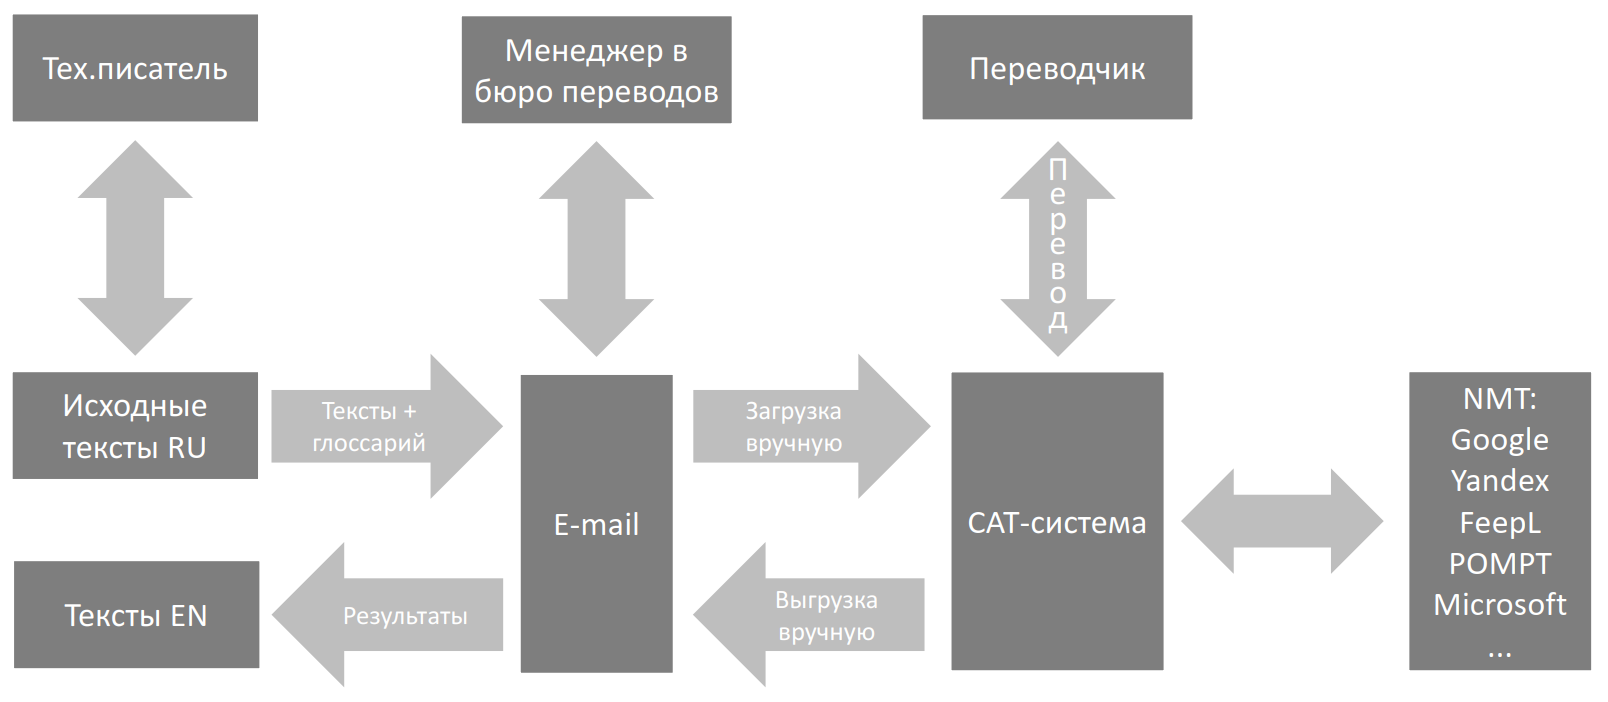 Схема работы с бюро переводов